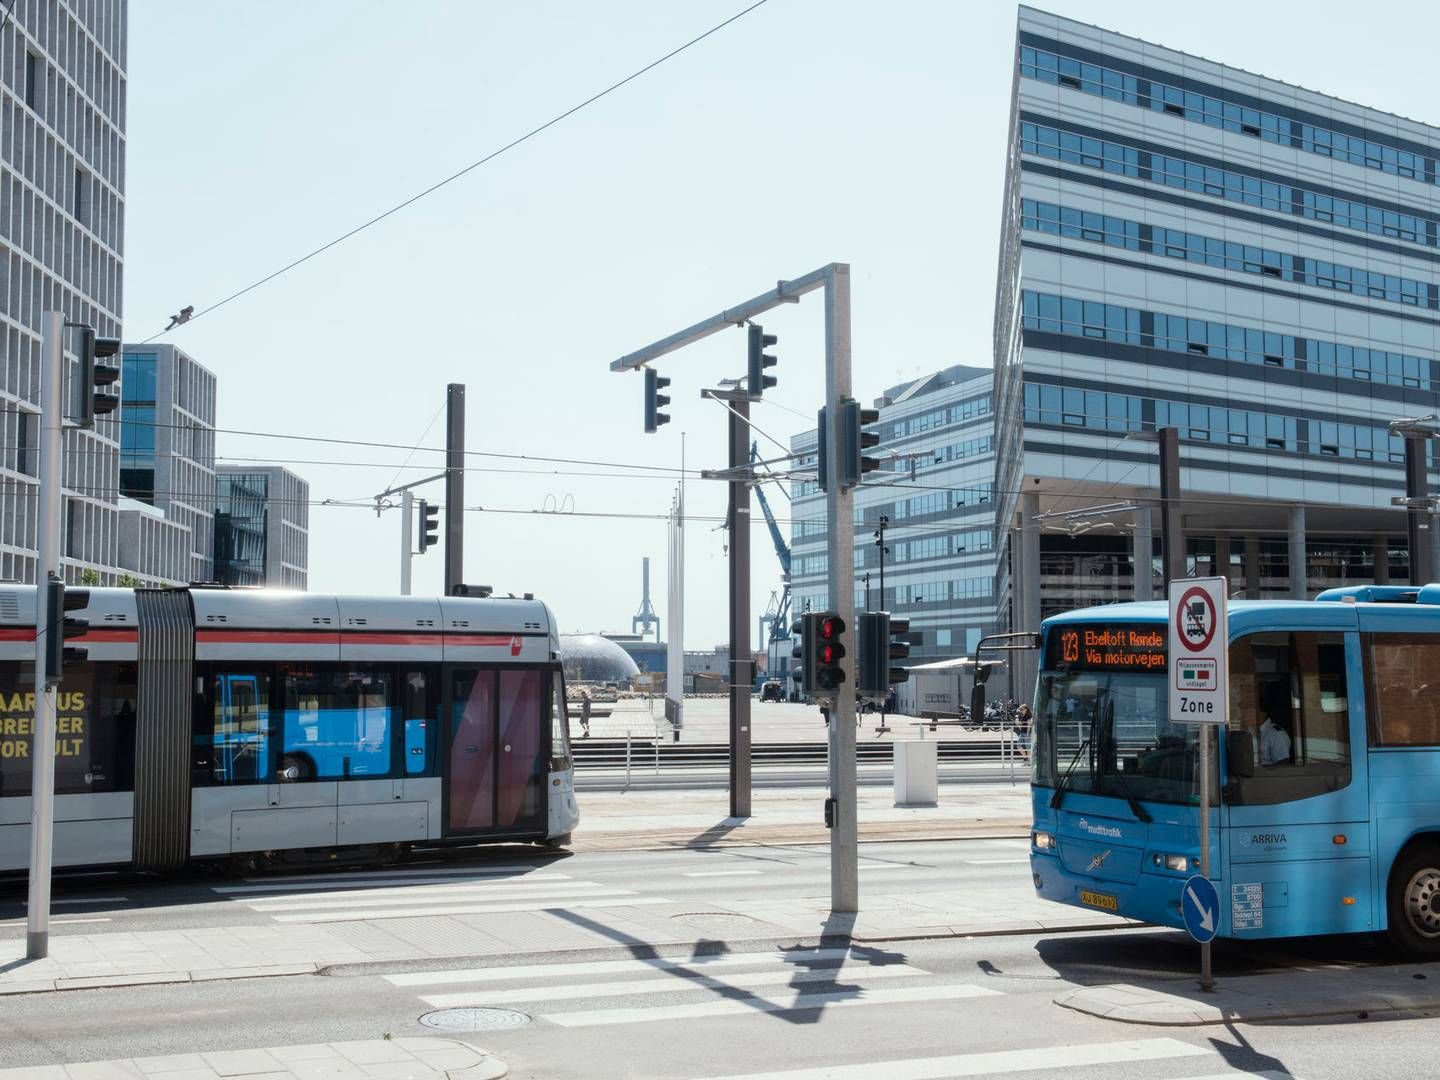 Letbanen brugte færre penge end budgetteret i 2022, mens busdriften gik væsentligt over budget. | Photo: Lau-Nielsen Morten/Ritzau Scanpix